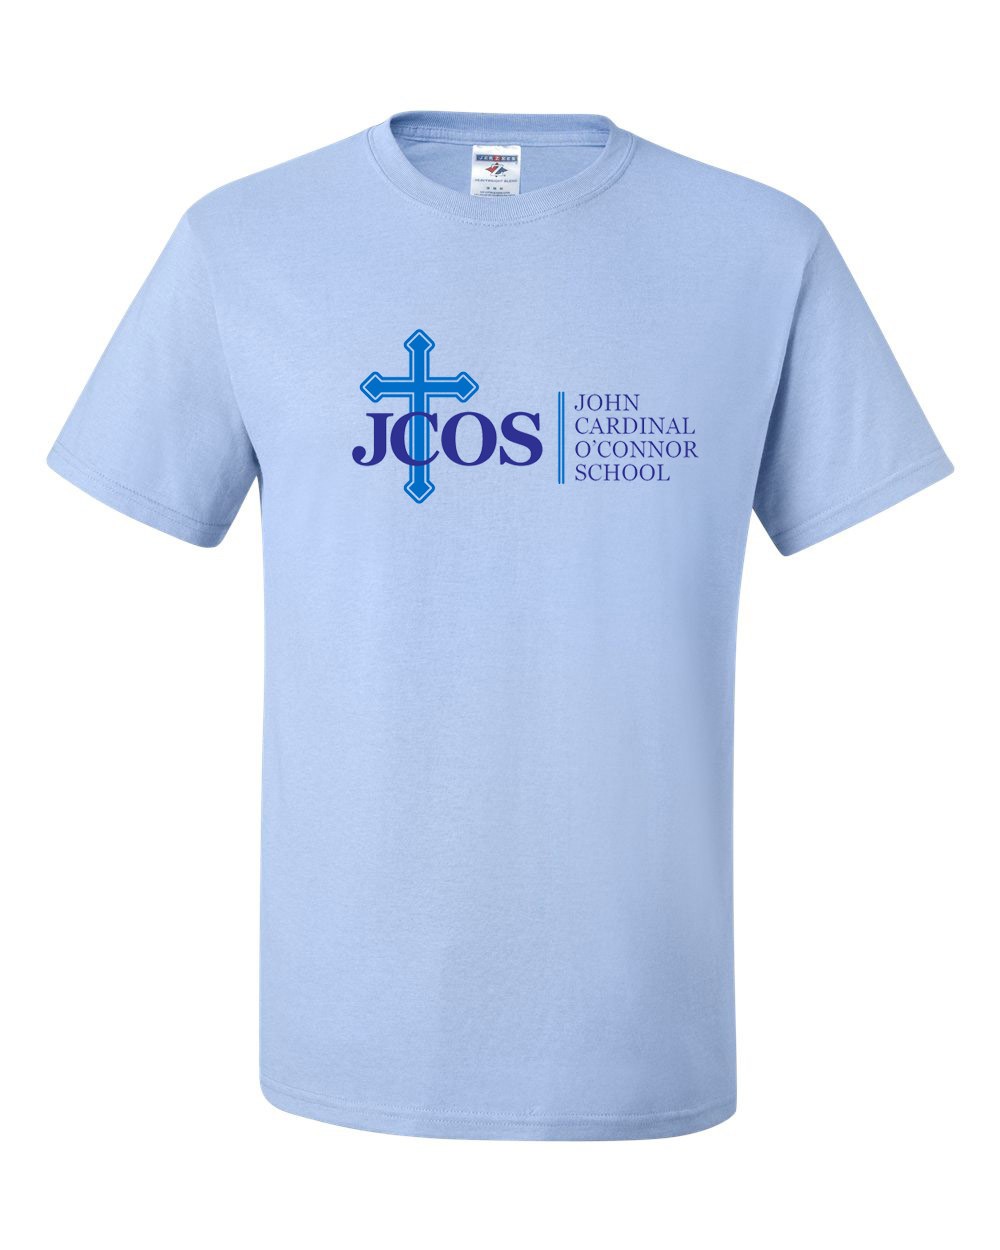 JCOS Staff Gym T-Shirt w/ School Logo